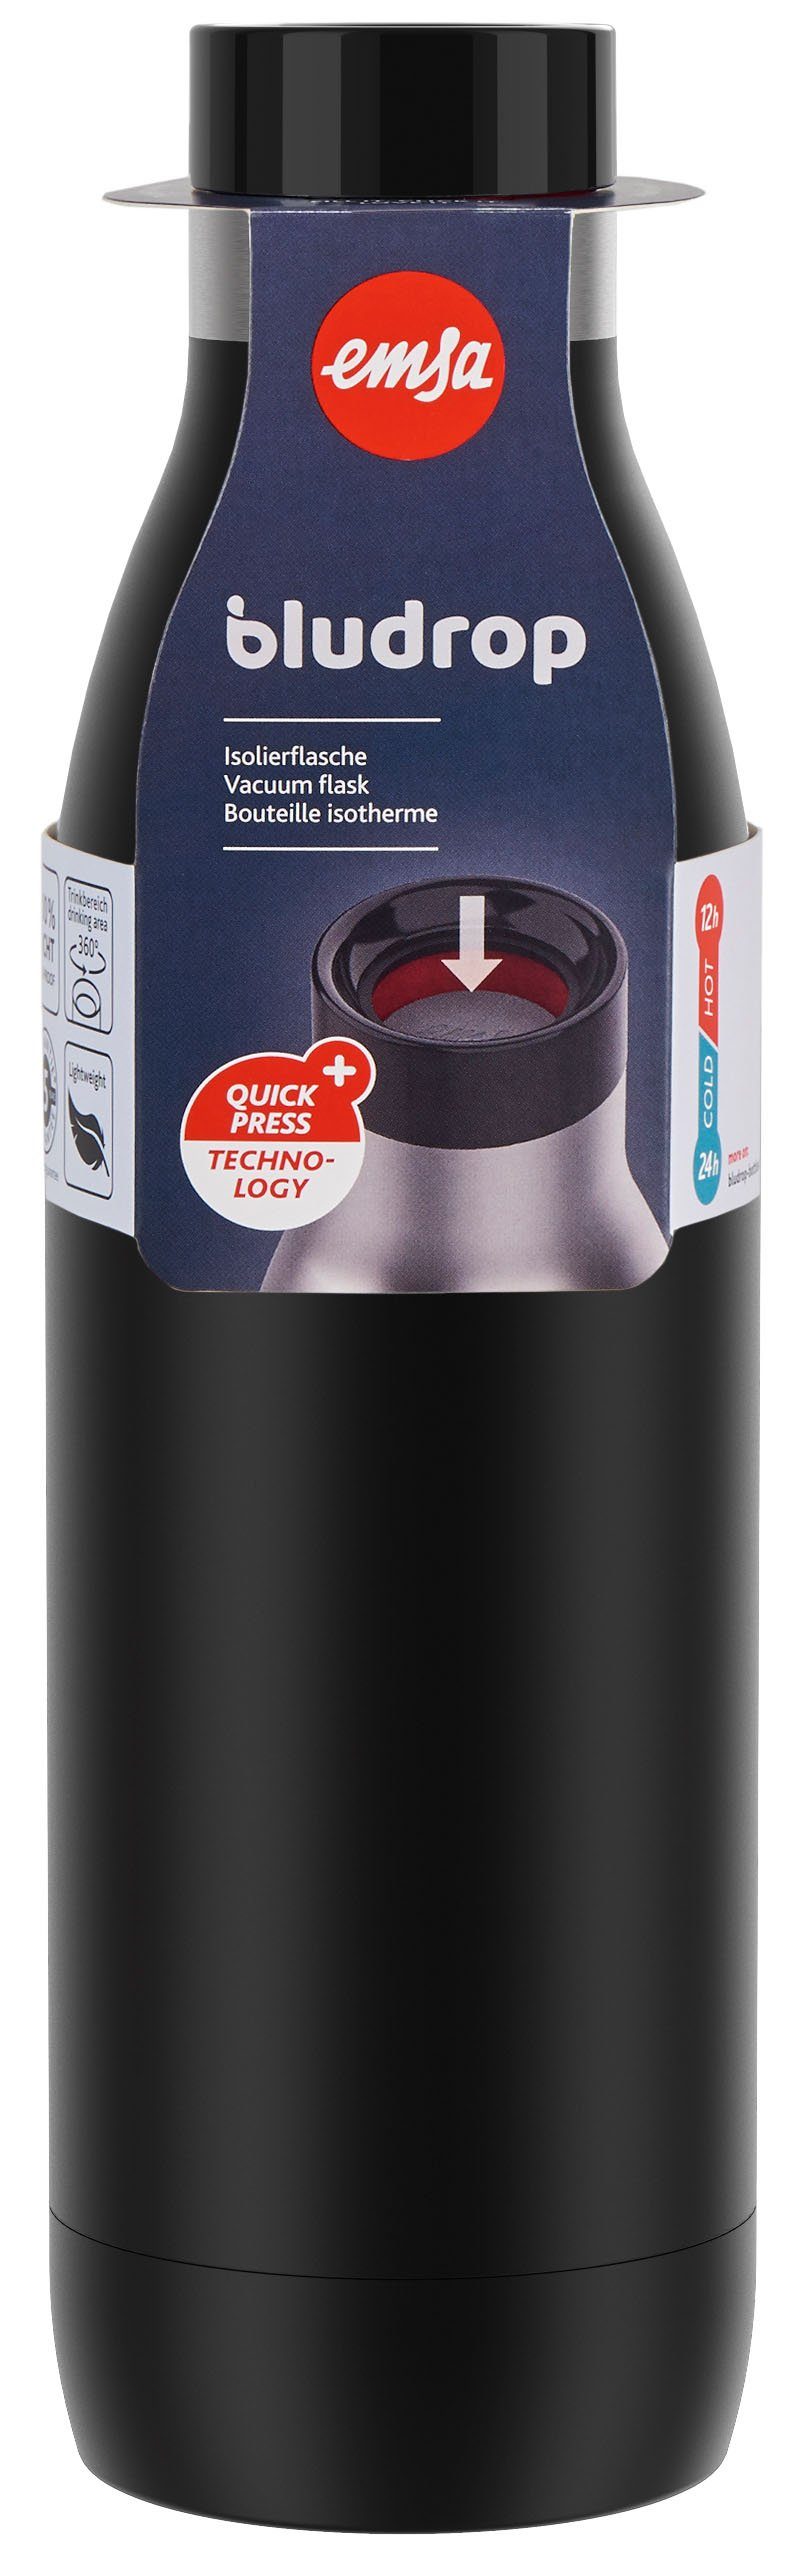 Emsa Color, Quick-Press Deckel, spülmaschinenfest Bludrop Trinkflasche warm/24h Edelstahl, 12h kühl, schwarz